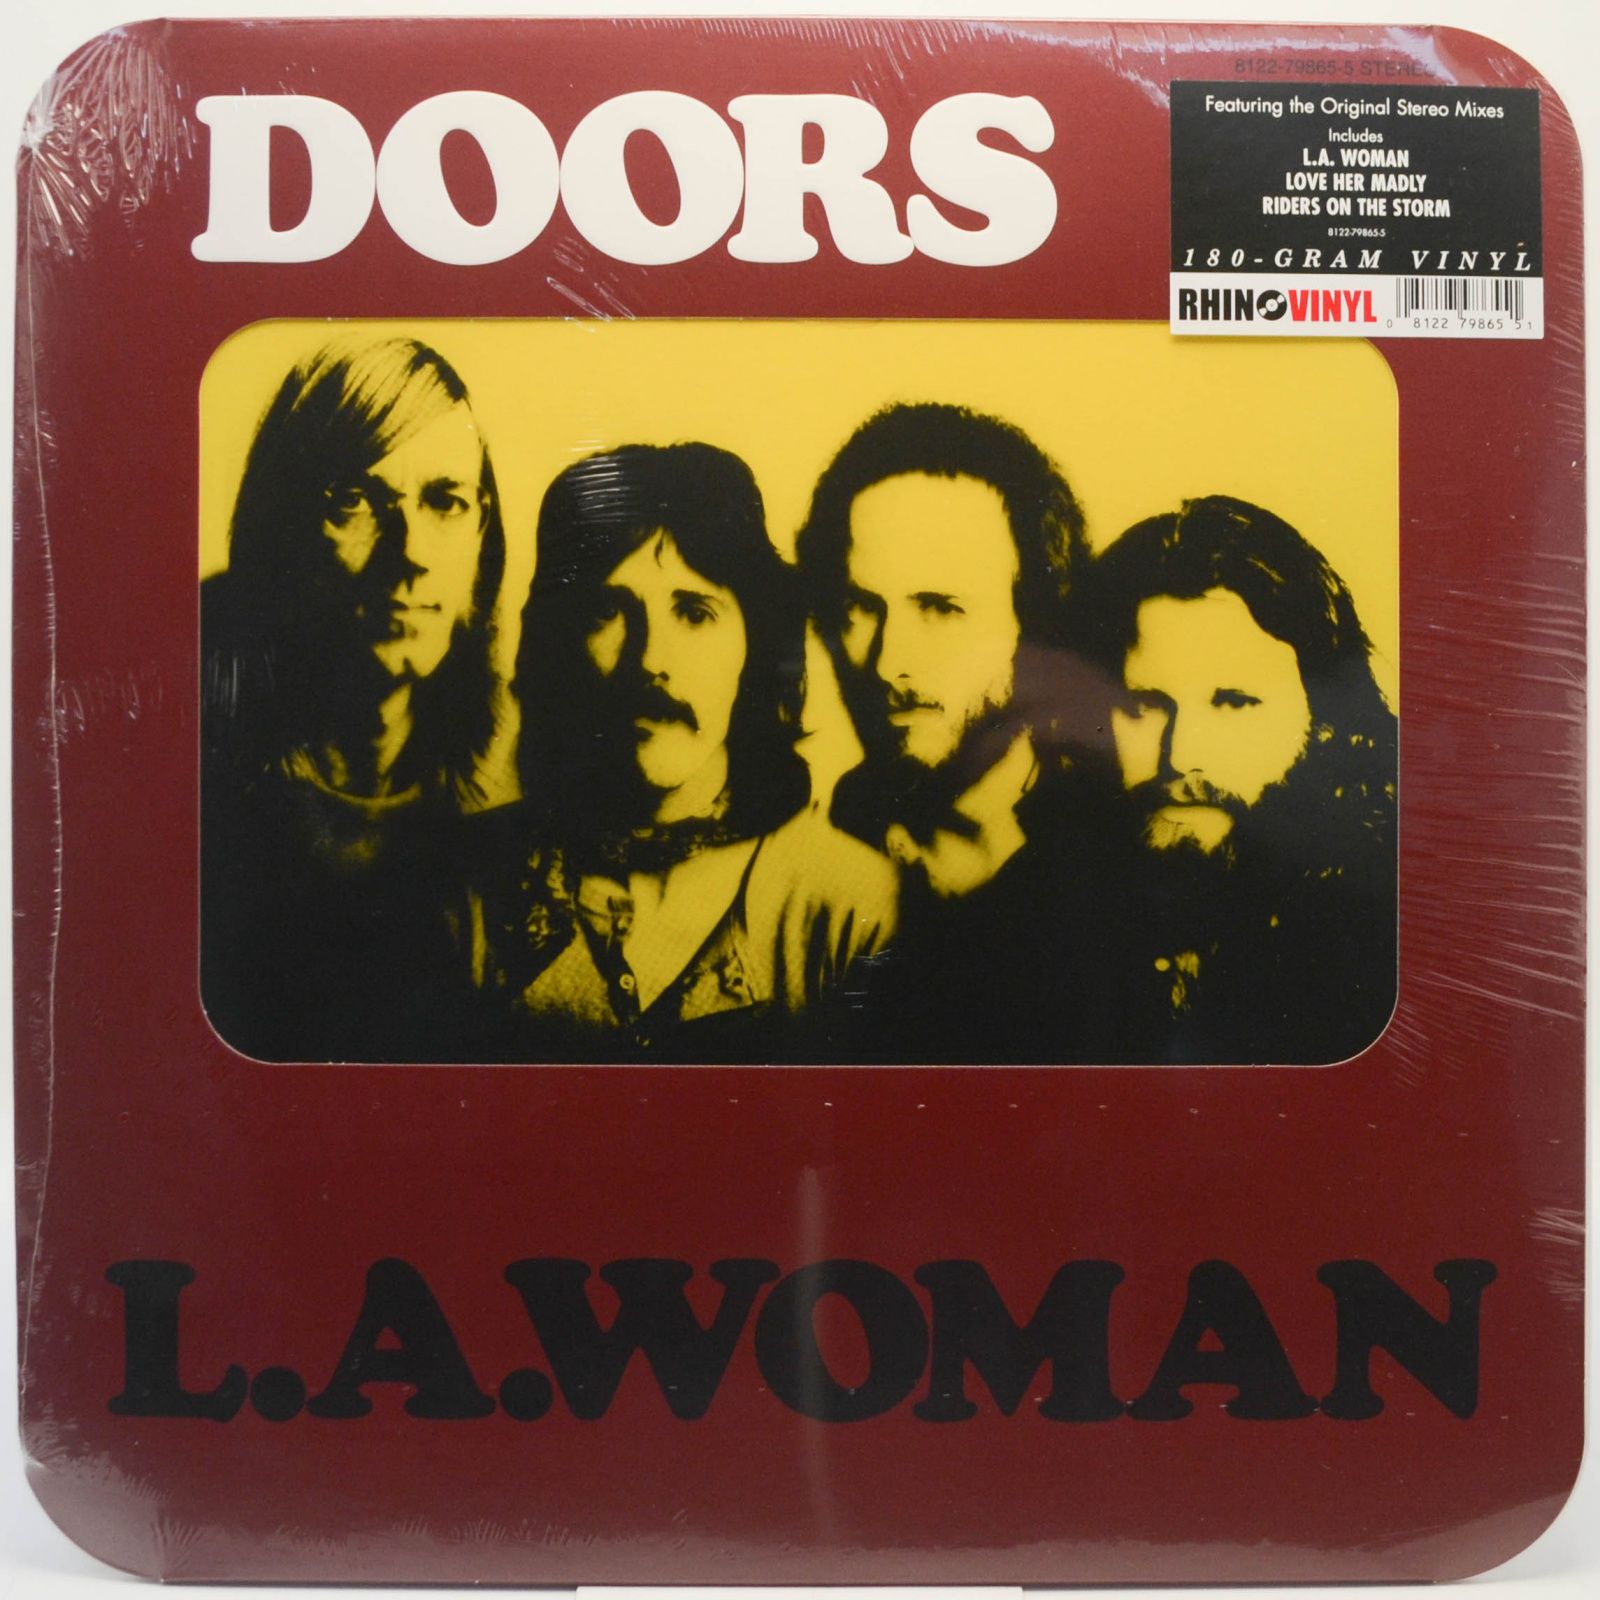 Doors — L.A. Woman, 2009